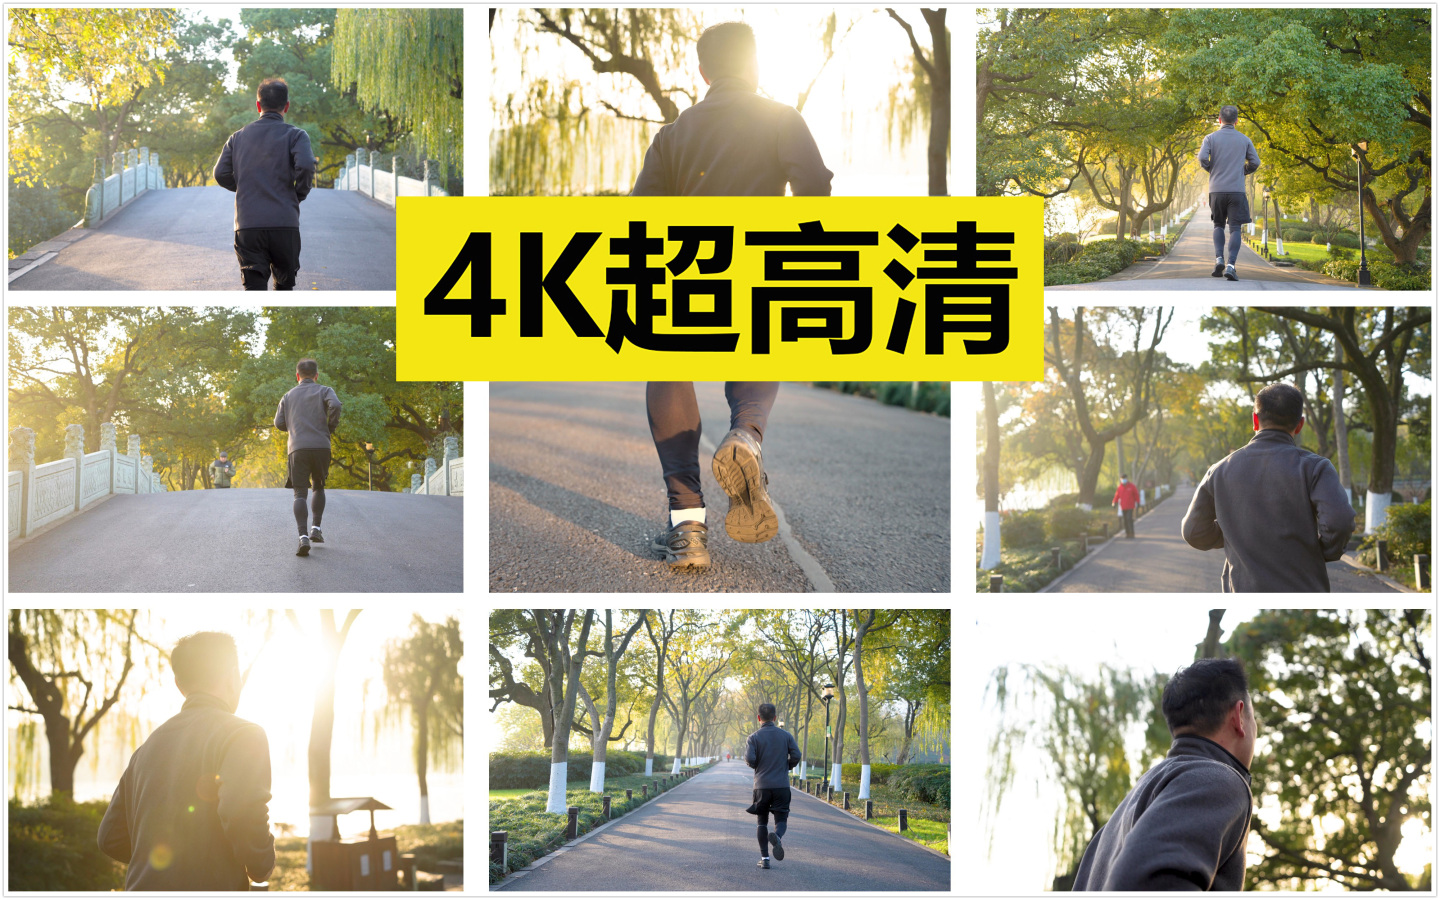 清晨 金色阳光 跑步【原创4K】